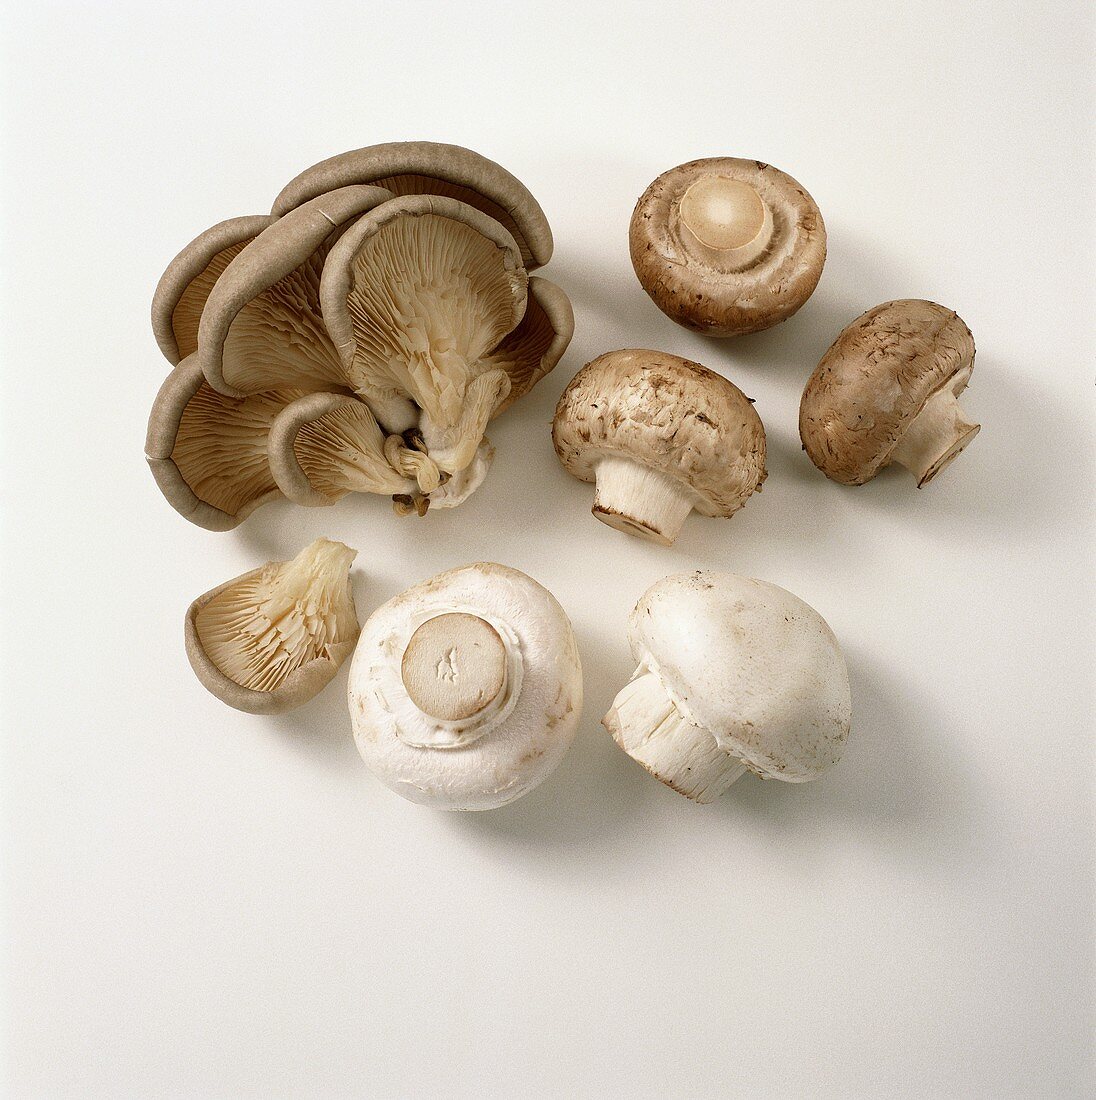 Oyster mushrooms, button mushrooms & chestnut mushrooms